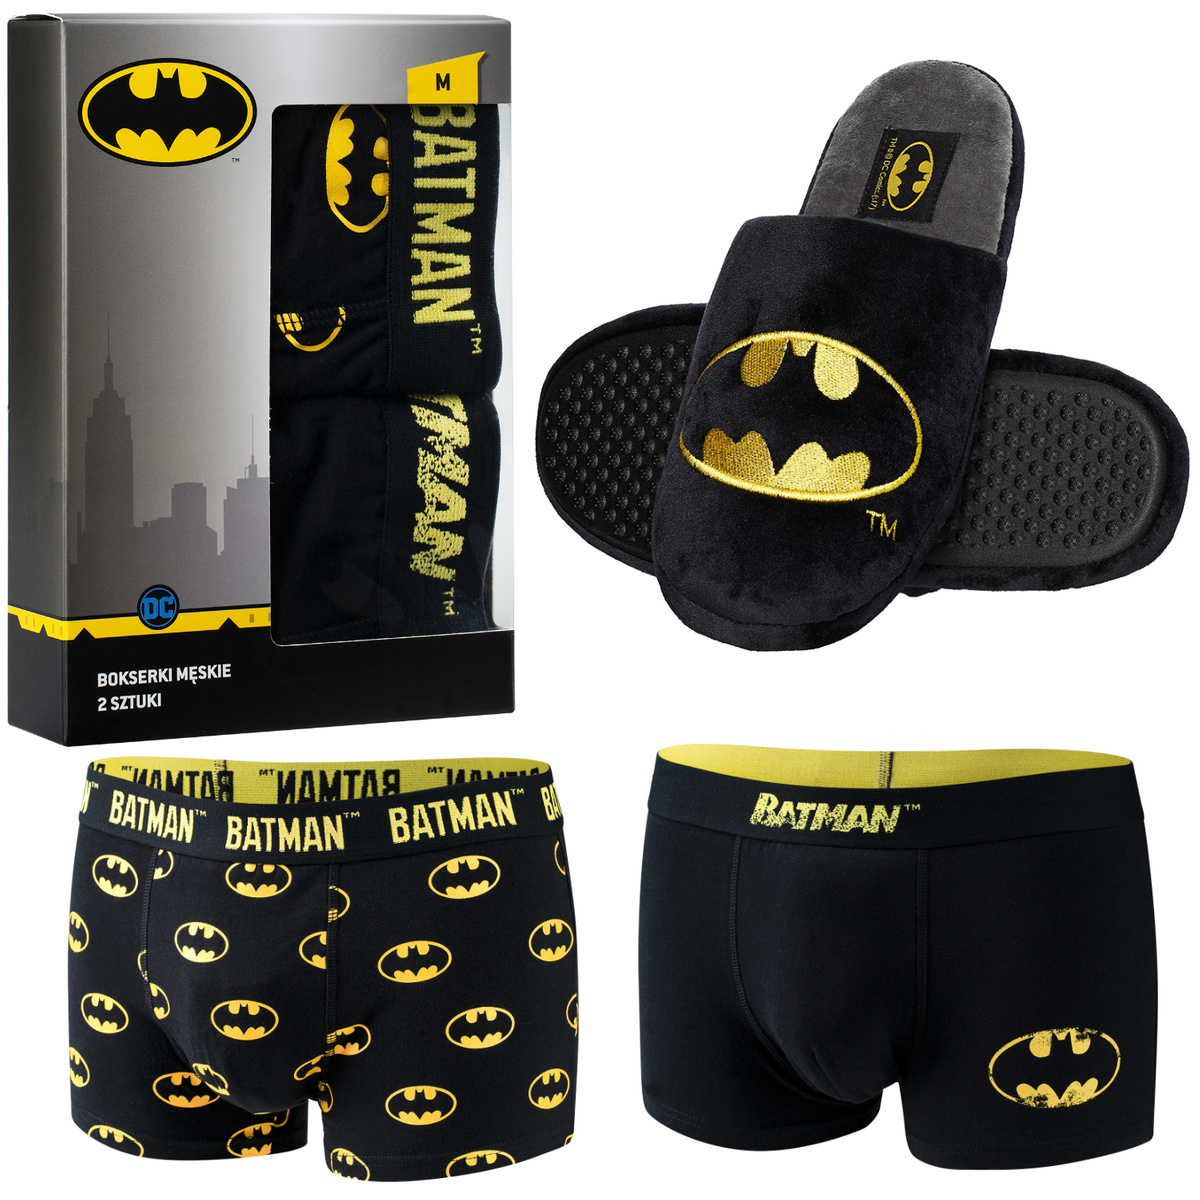  Batman Herren Boxershorts und Hausshucheeine perfekte Idee für ein Weihnachtsgeschenk